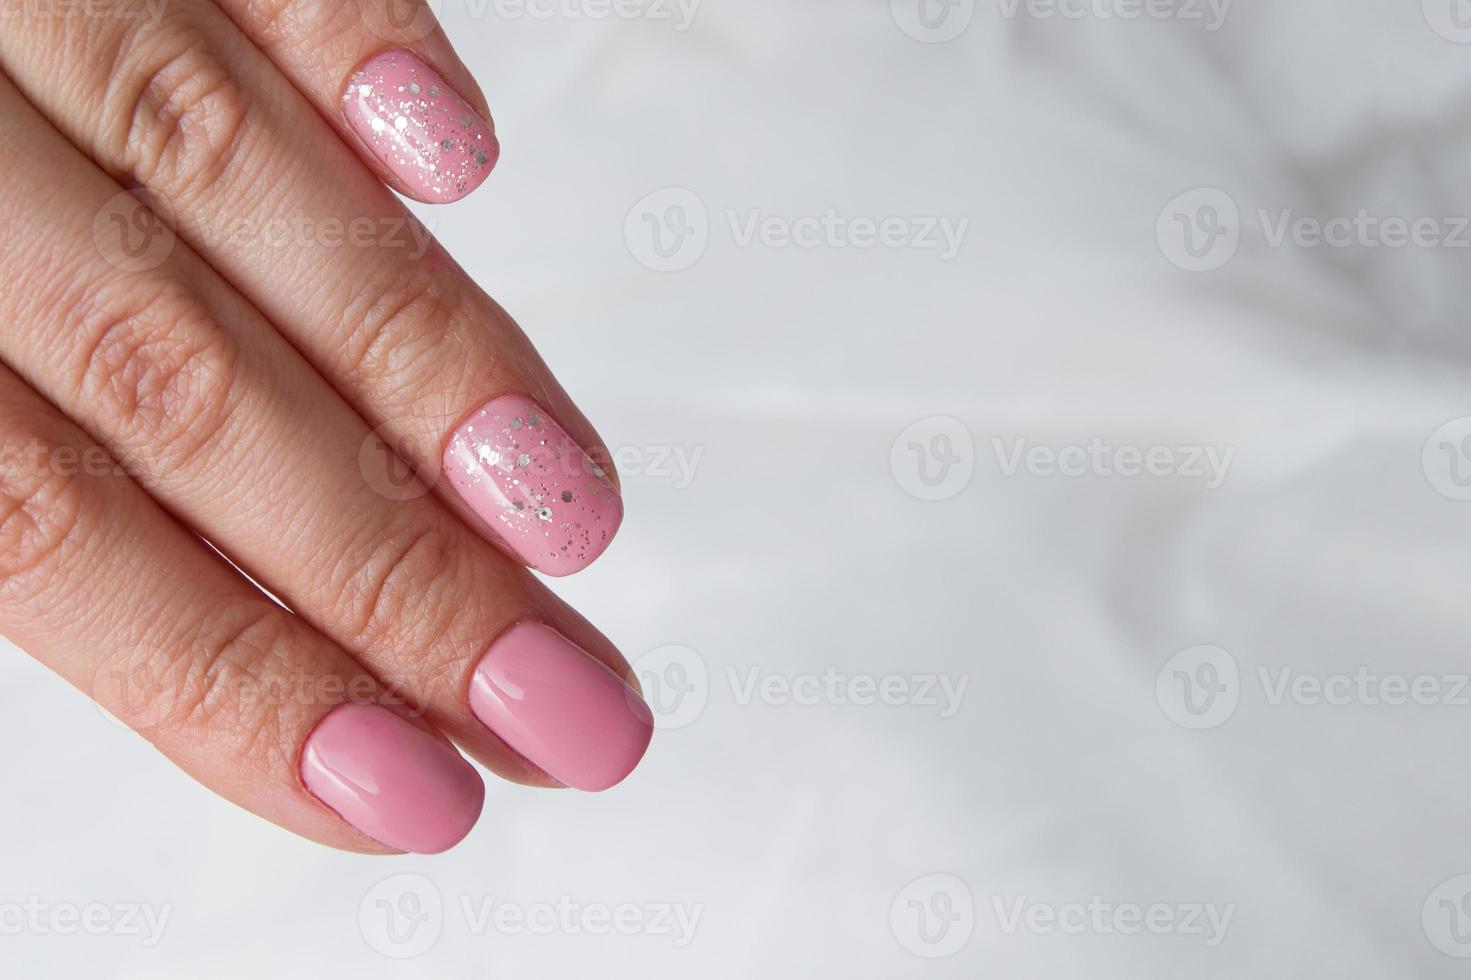 hermoso barniz rosa suave y destellos en las uñas - manicura de revestimiento de salón de barniz de gel foto